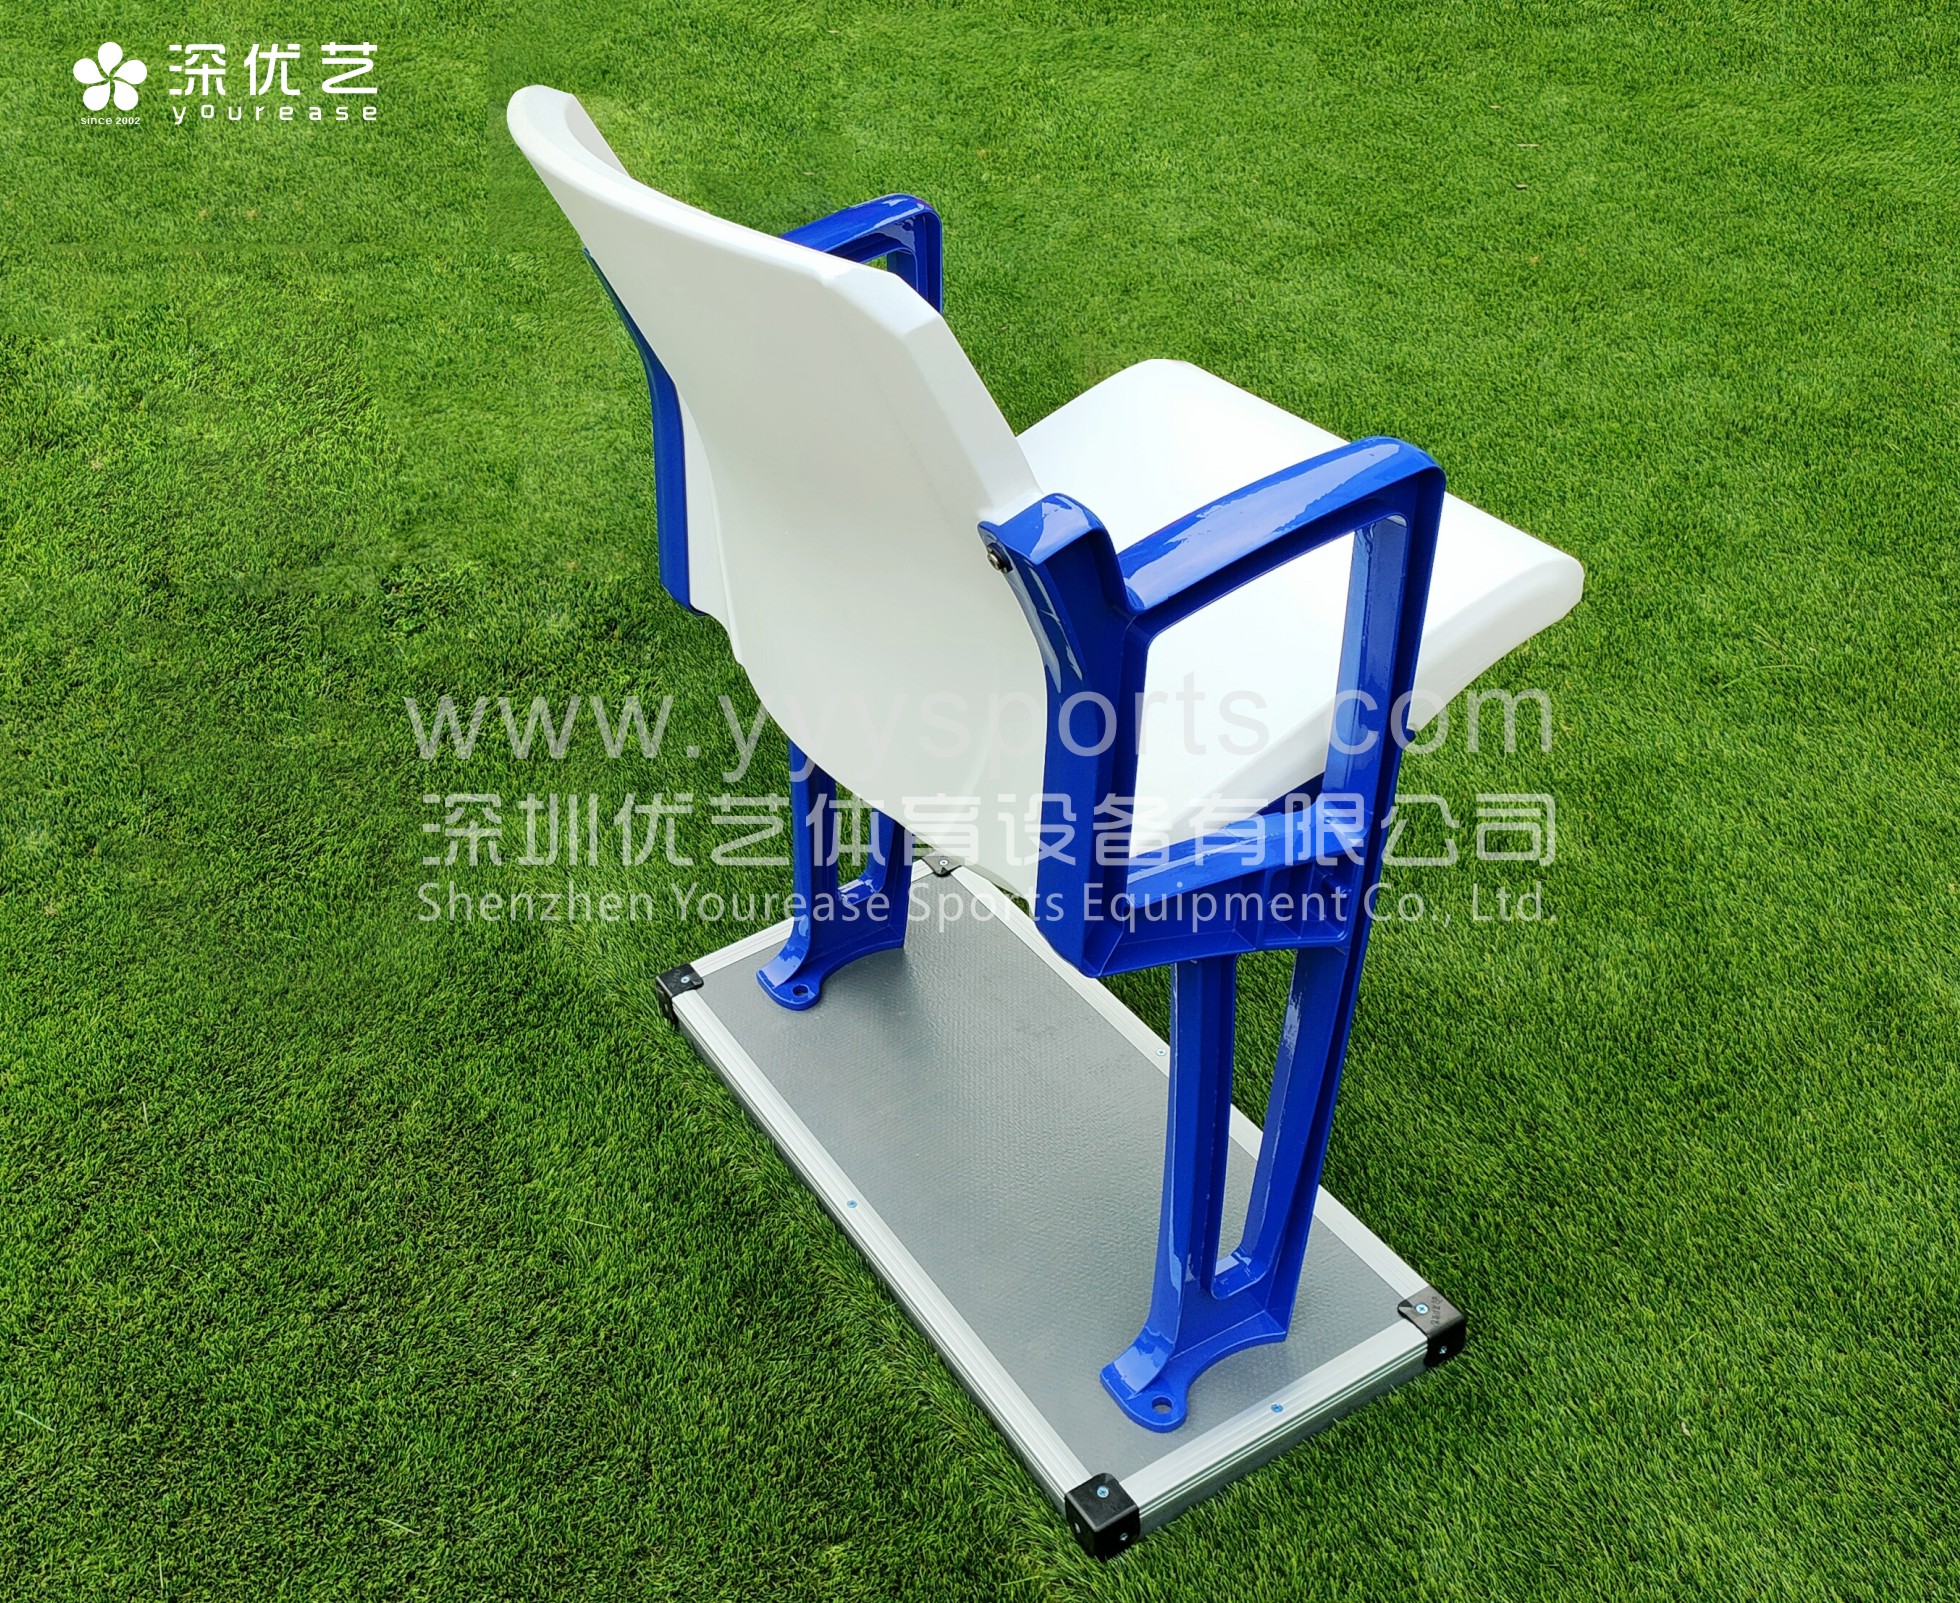 Cadeira de estádio de futebol de plástico Yourease Preço Imagem em destaque